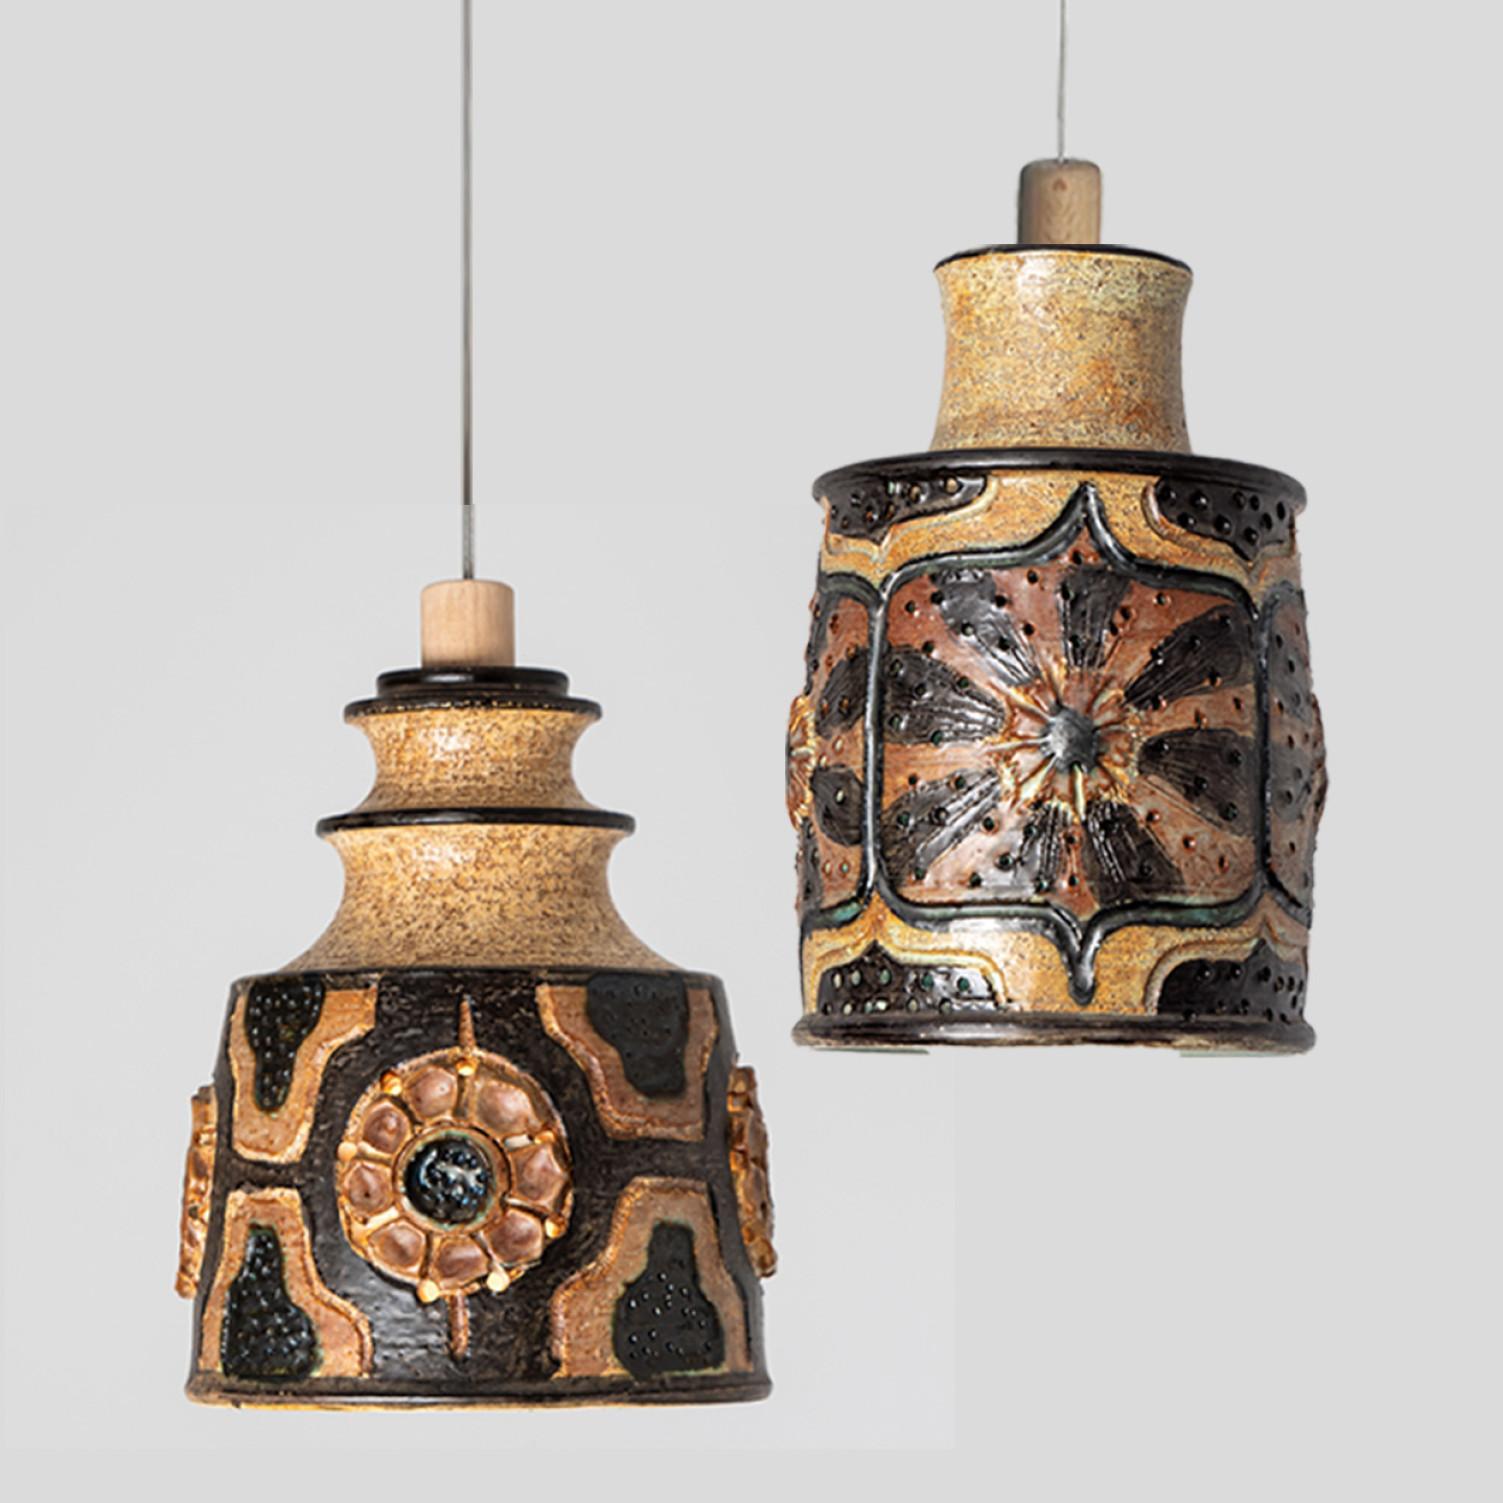 Arrangement ludique d'étonnantes lampes suspendues rondes à la forme inhabituelle, fabriquées dans les années 1970 au Danemark avec de riches céramiques brunes de couleur terra. Nous disposons d'une multitude d'ensembles et de compositions